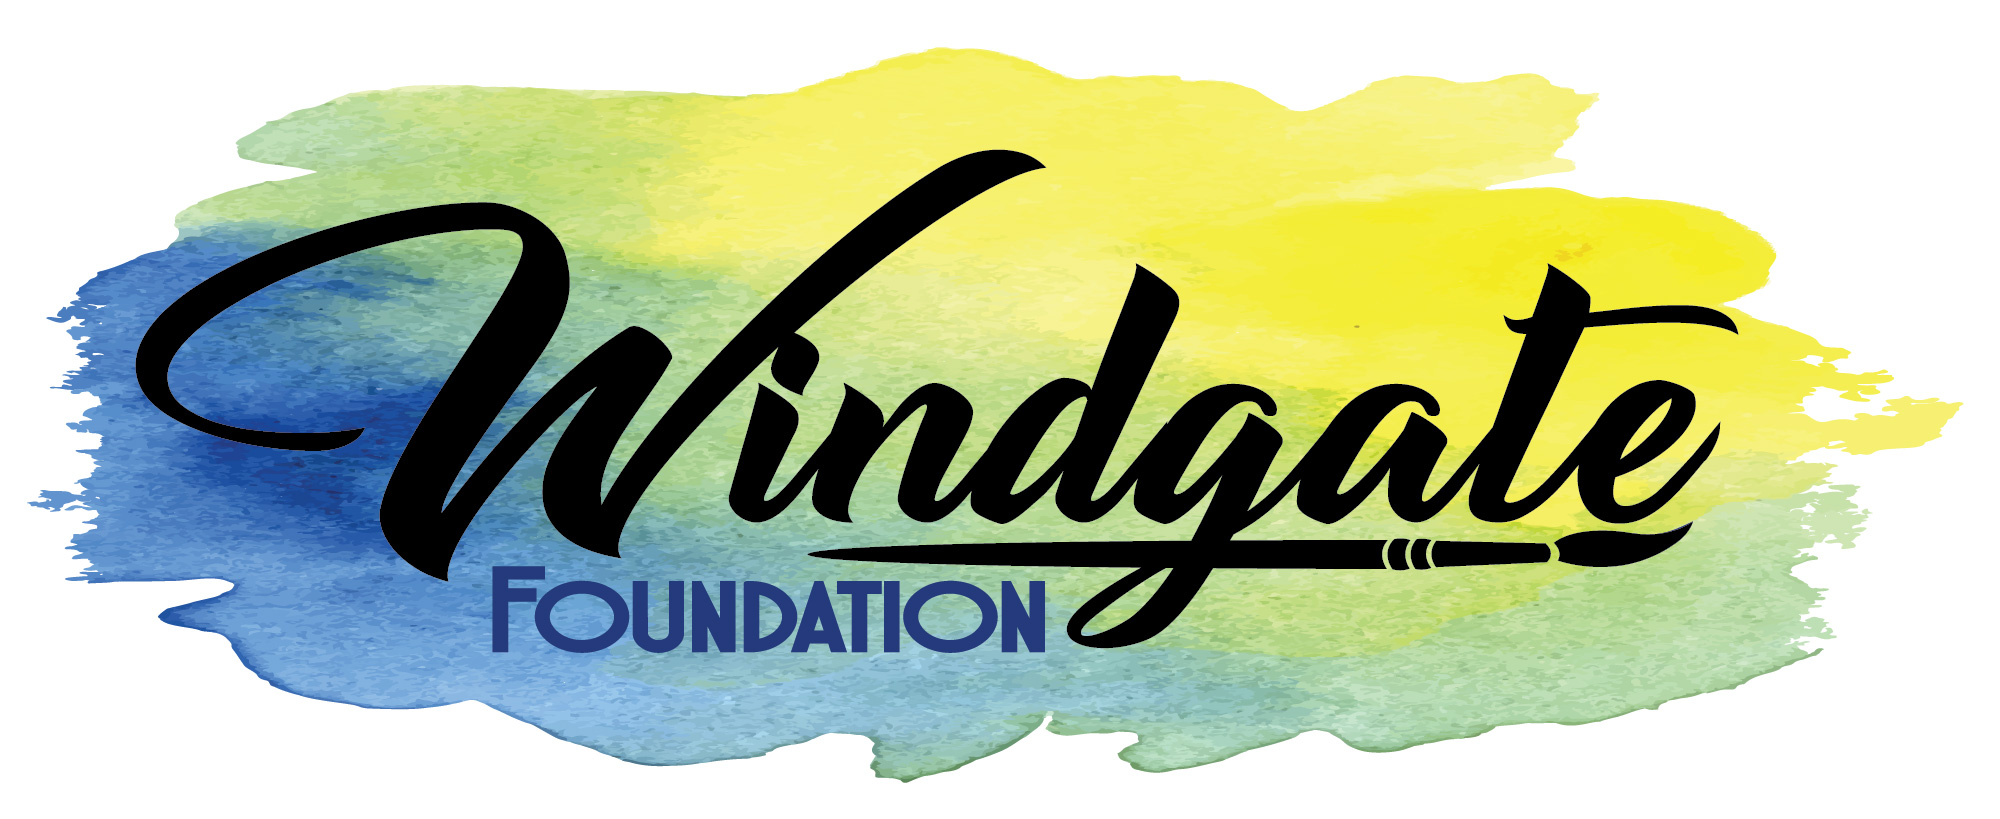 colorful windgate foundation logo